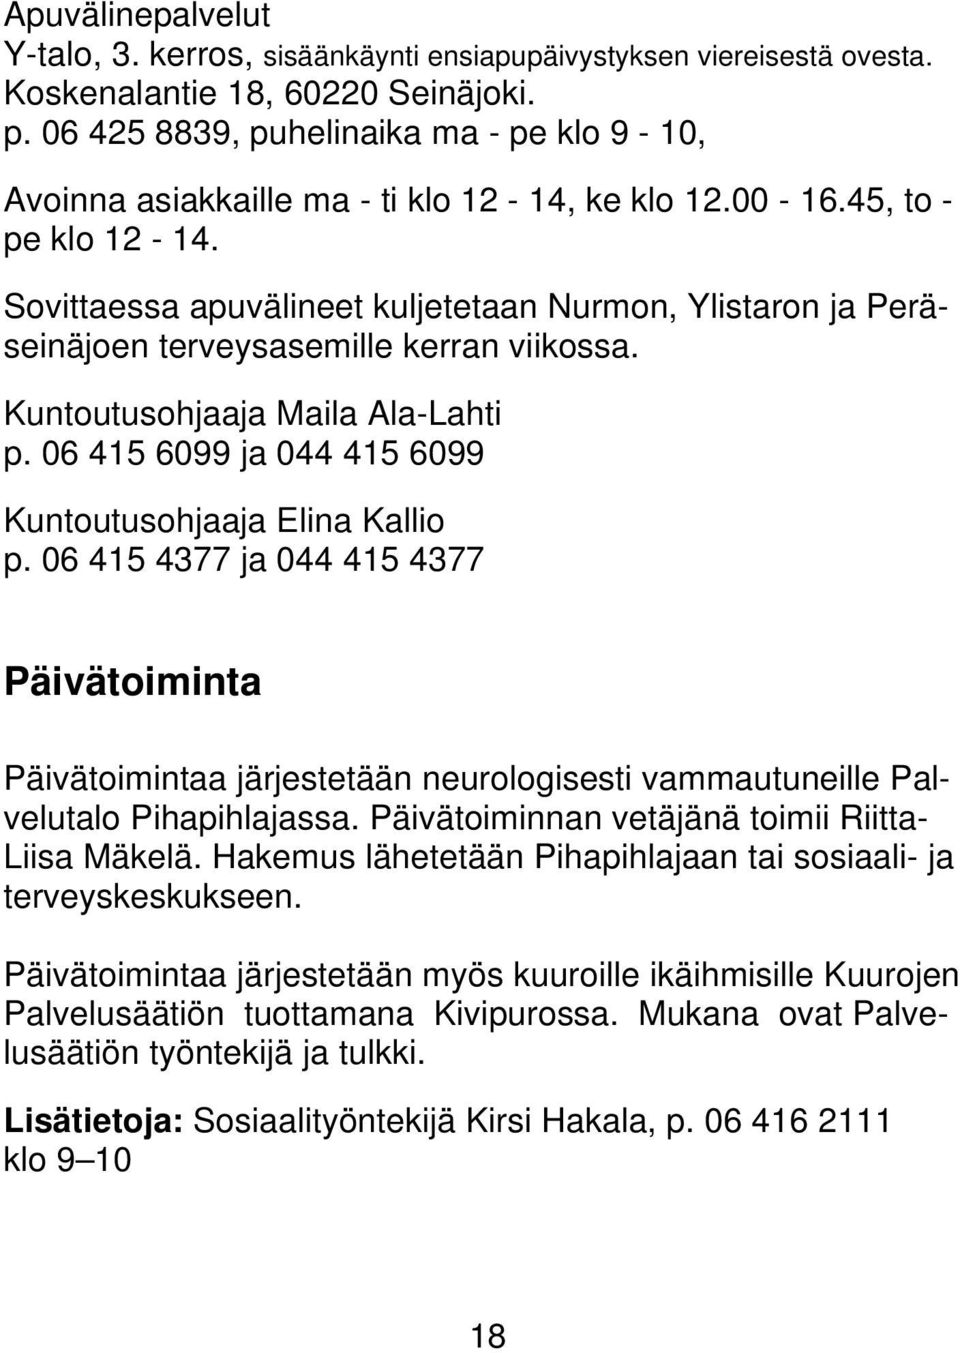 Sovittaessa apuvälineet kuljetetaan Nurmon, Ylistaron ja Peräseinäjoen terveysasemille kerran viikossa. Kuntoutusohjaaja Maila Ala-Lahti p. 06 415 6099 ja 044 415 6099 Kuntoutusohjaaja Elina Kallio p.